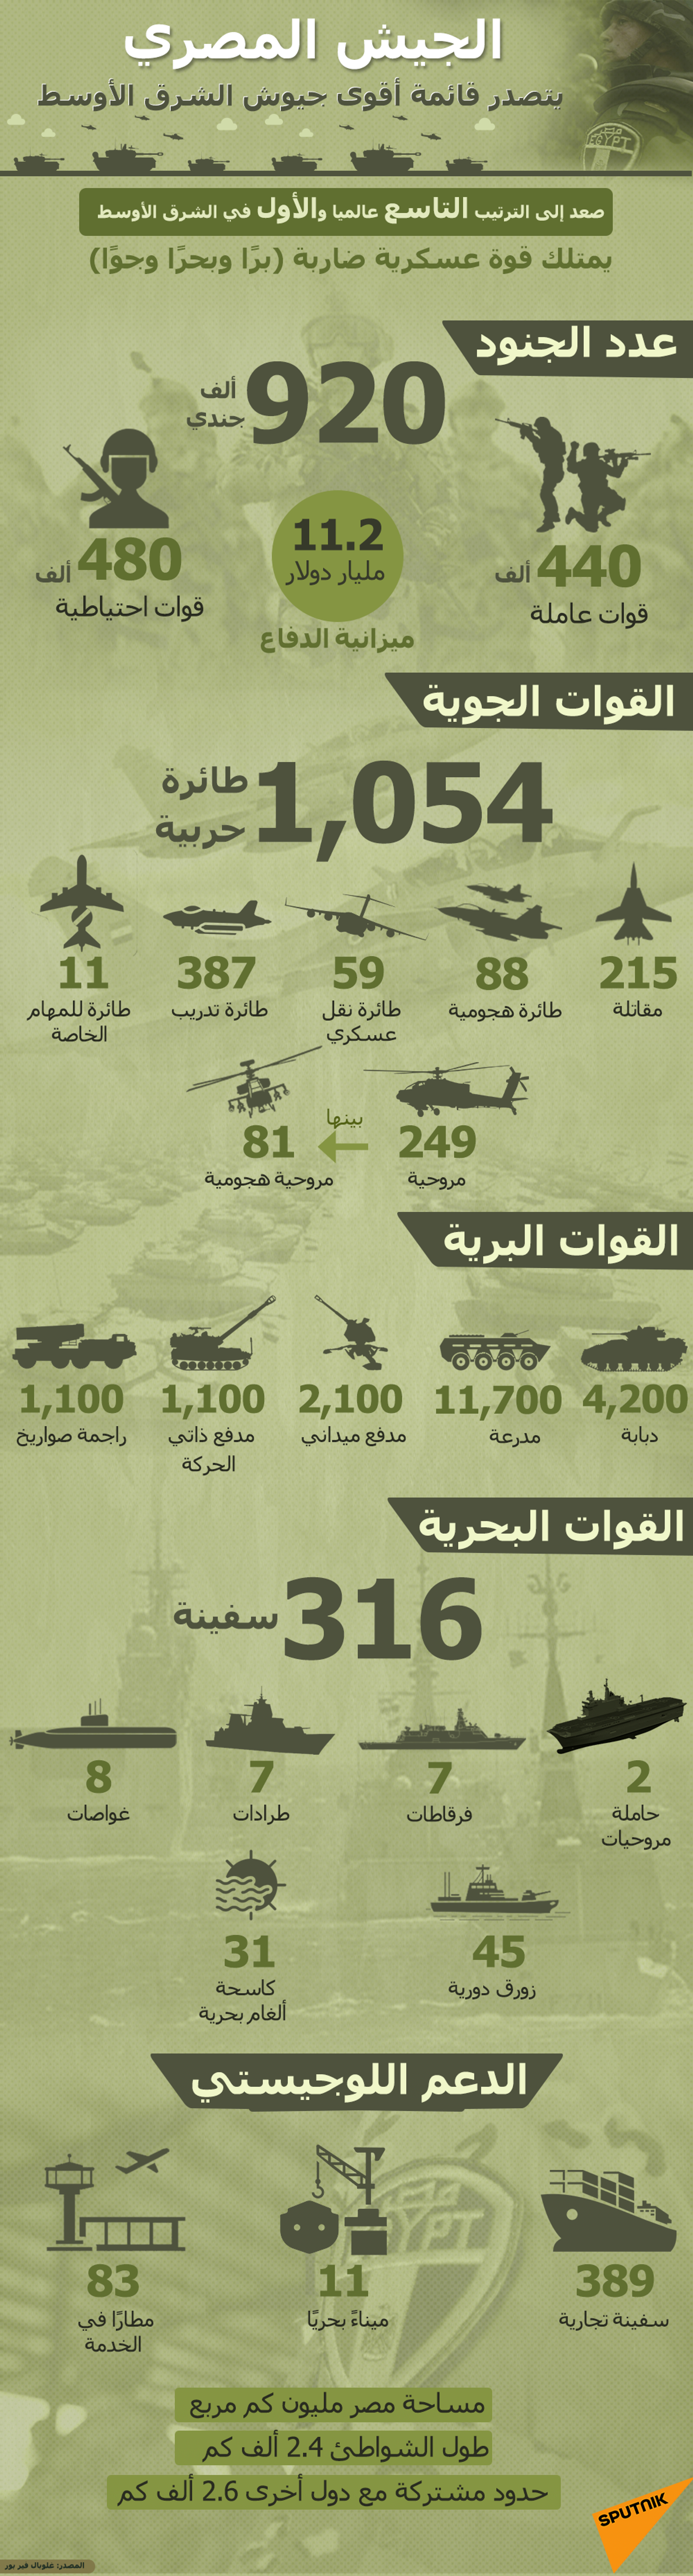 الجيش المصري يتصدر قائمة أقوى جيوش الشرق الأوسط - سبوتنيك عربي, 1920, 23.11.2021